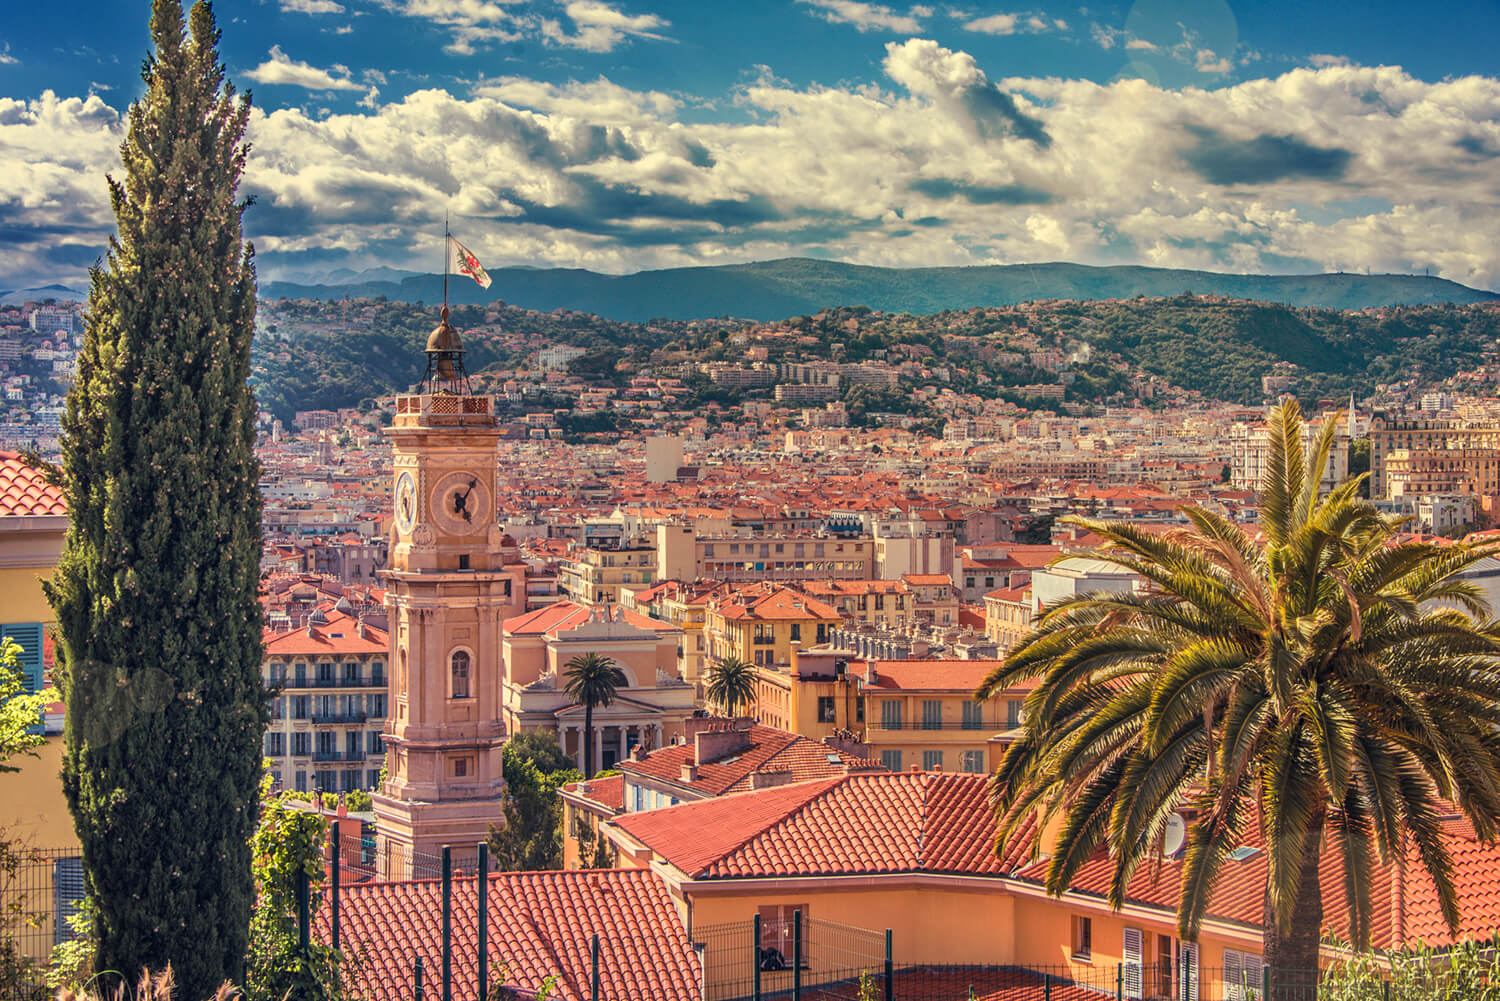 Kurs językowy we Francji, widok na panoramę miasta Nicea